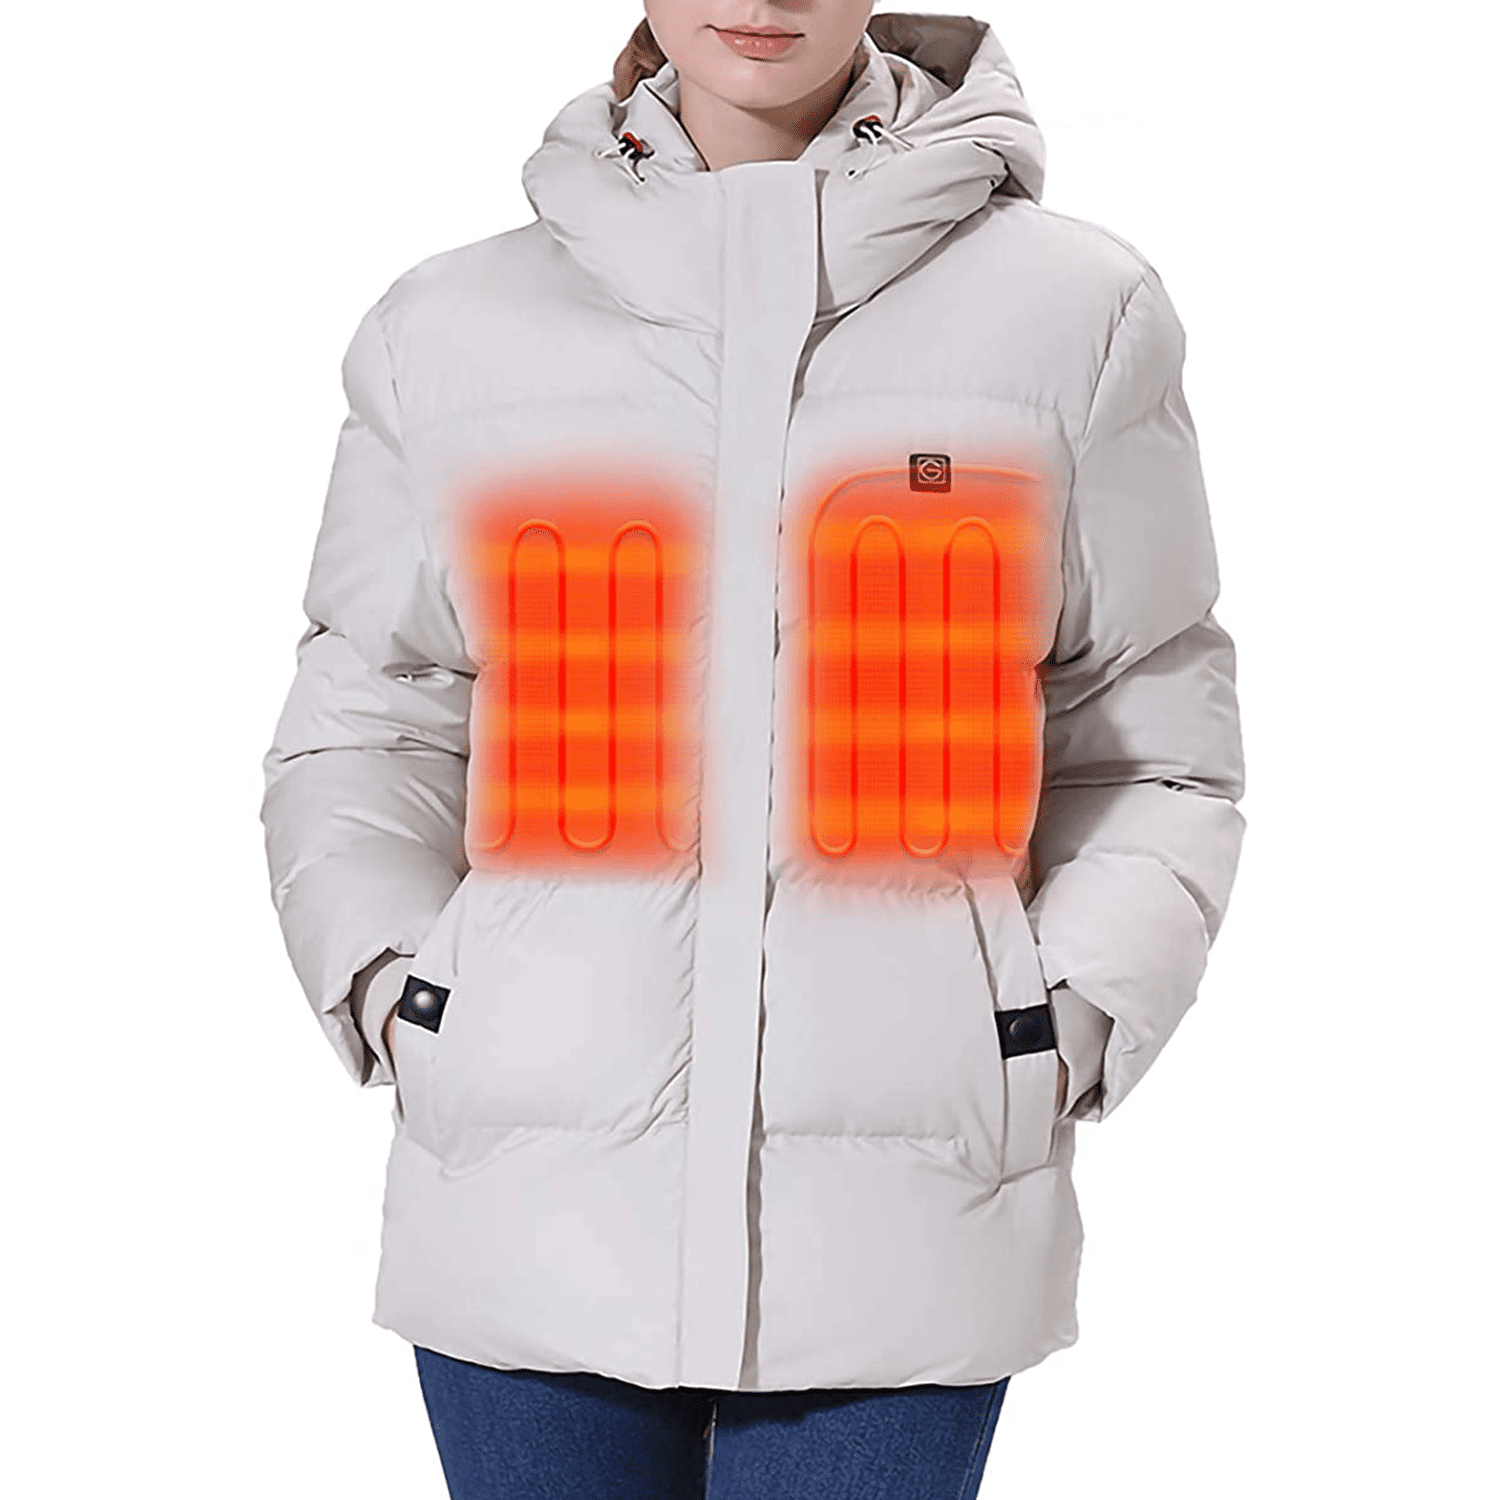 heated jacket